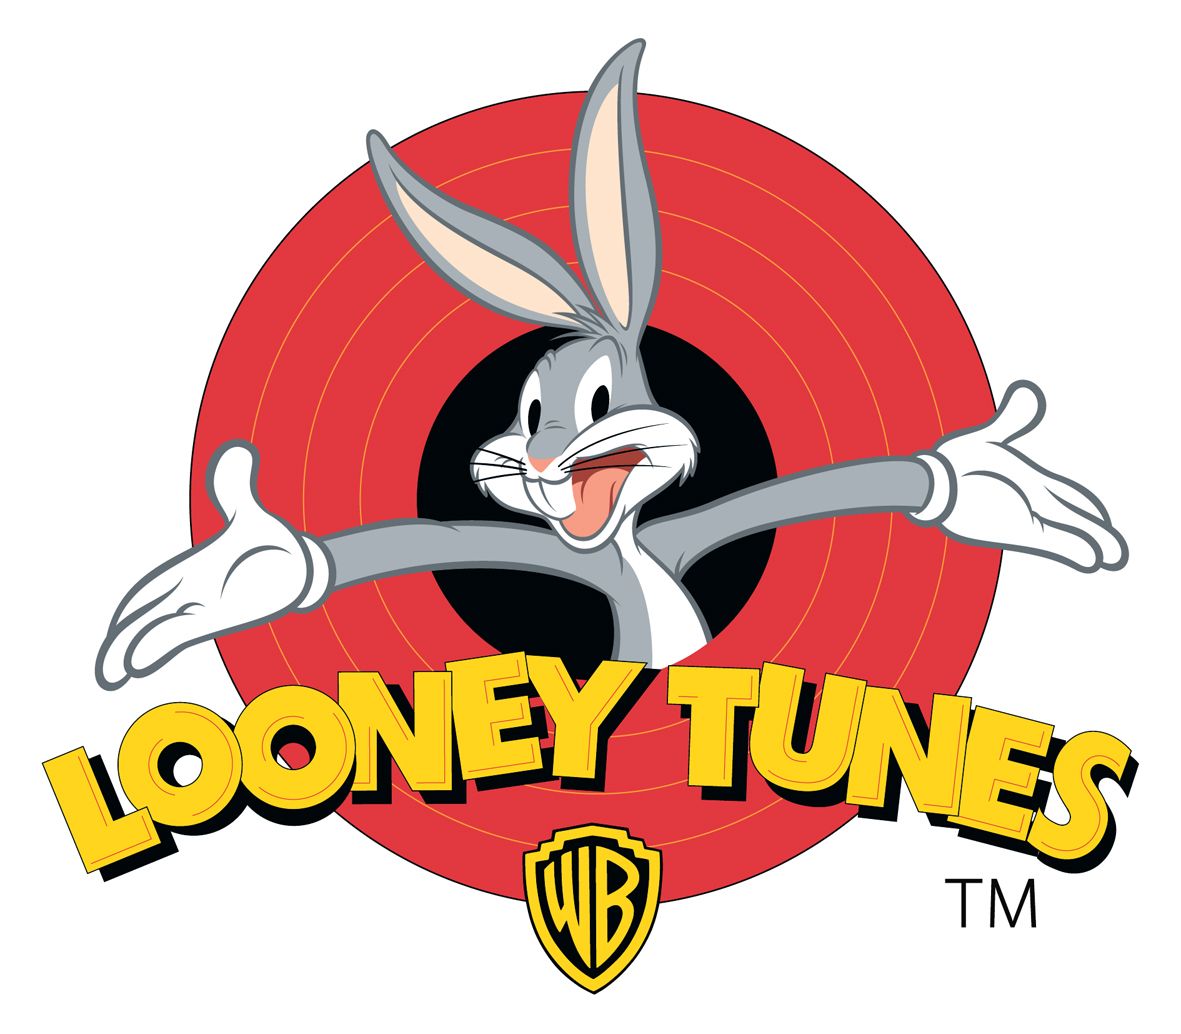 looney tunes logo background image pc